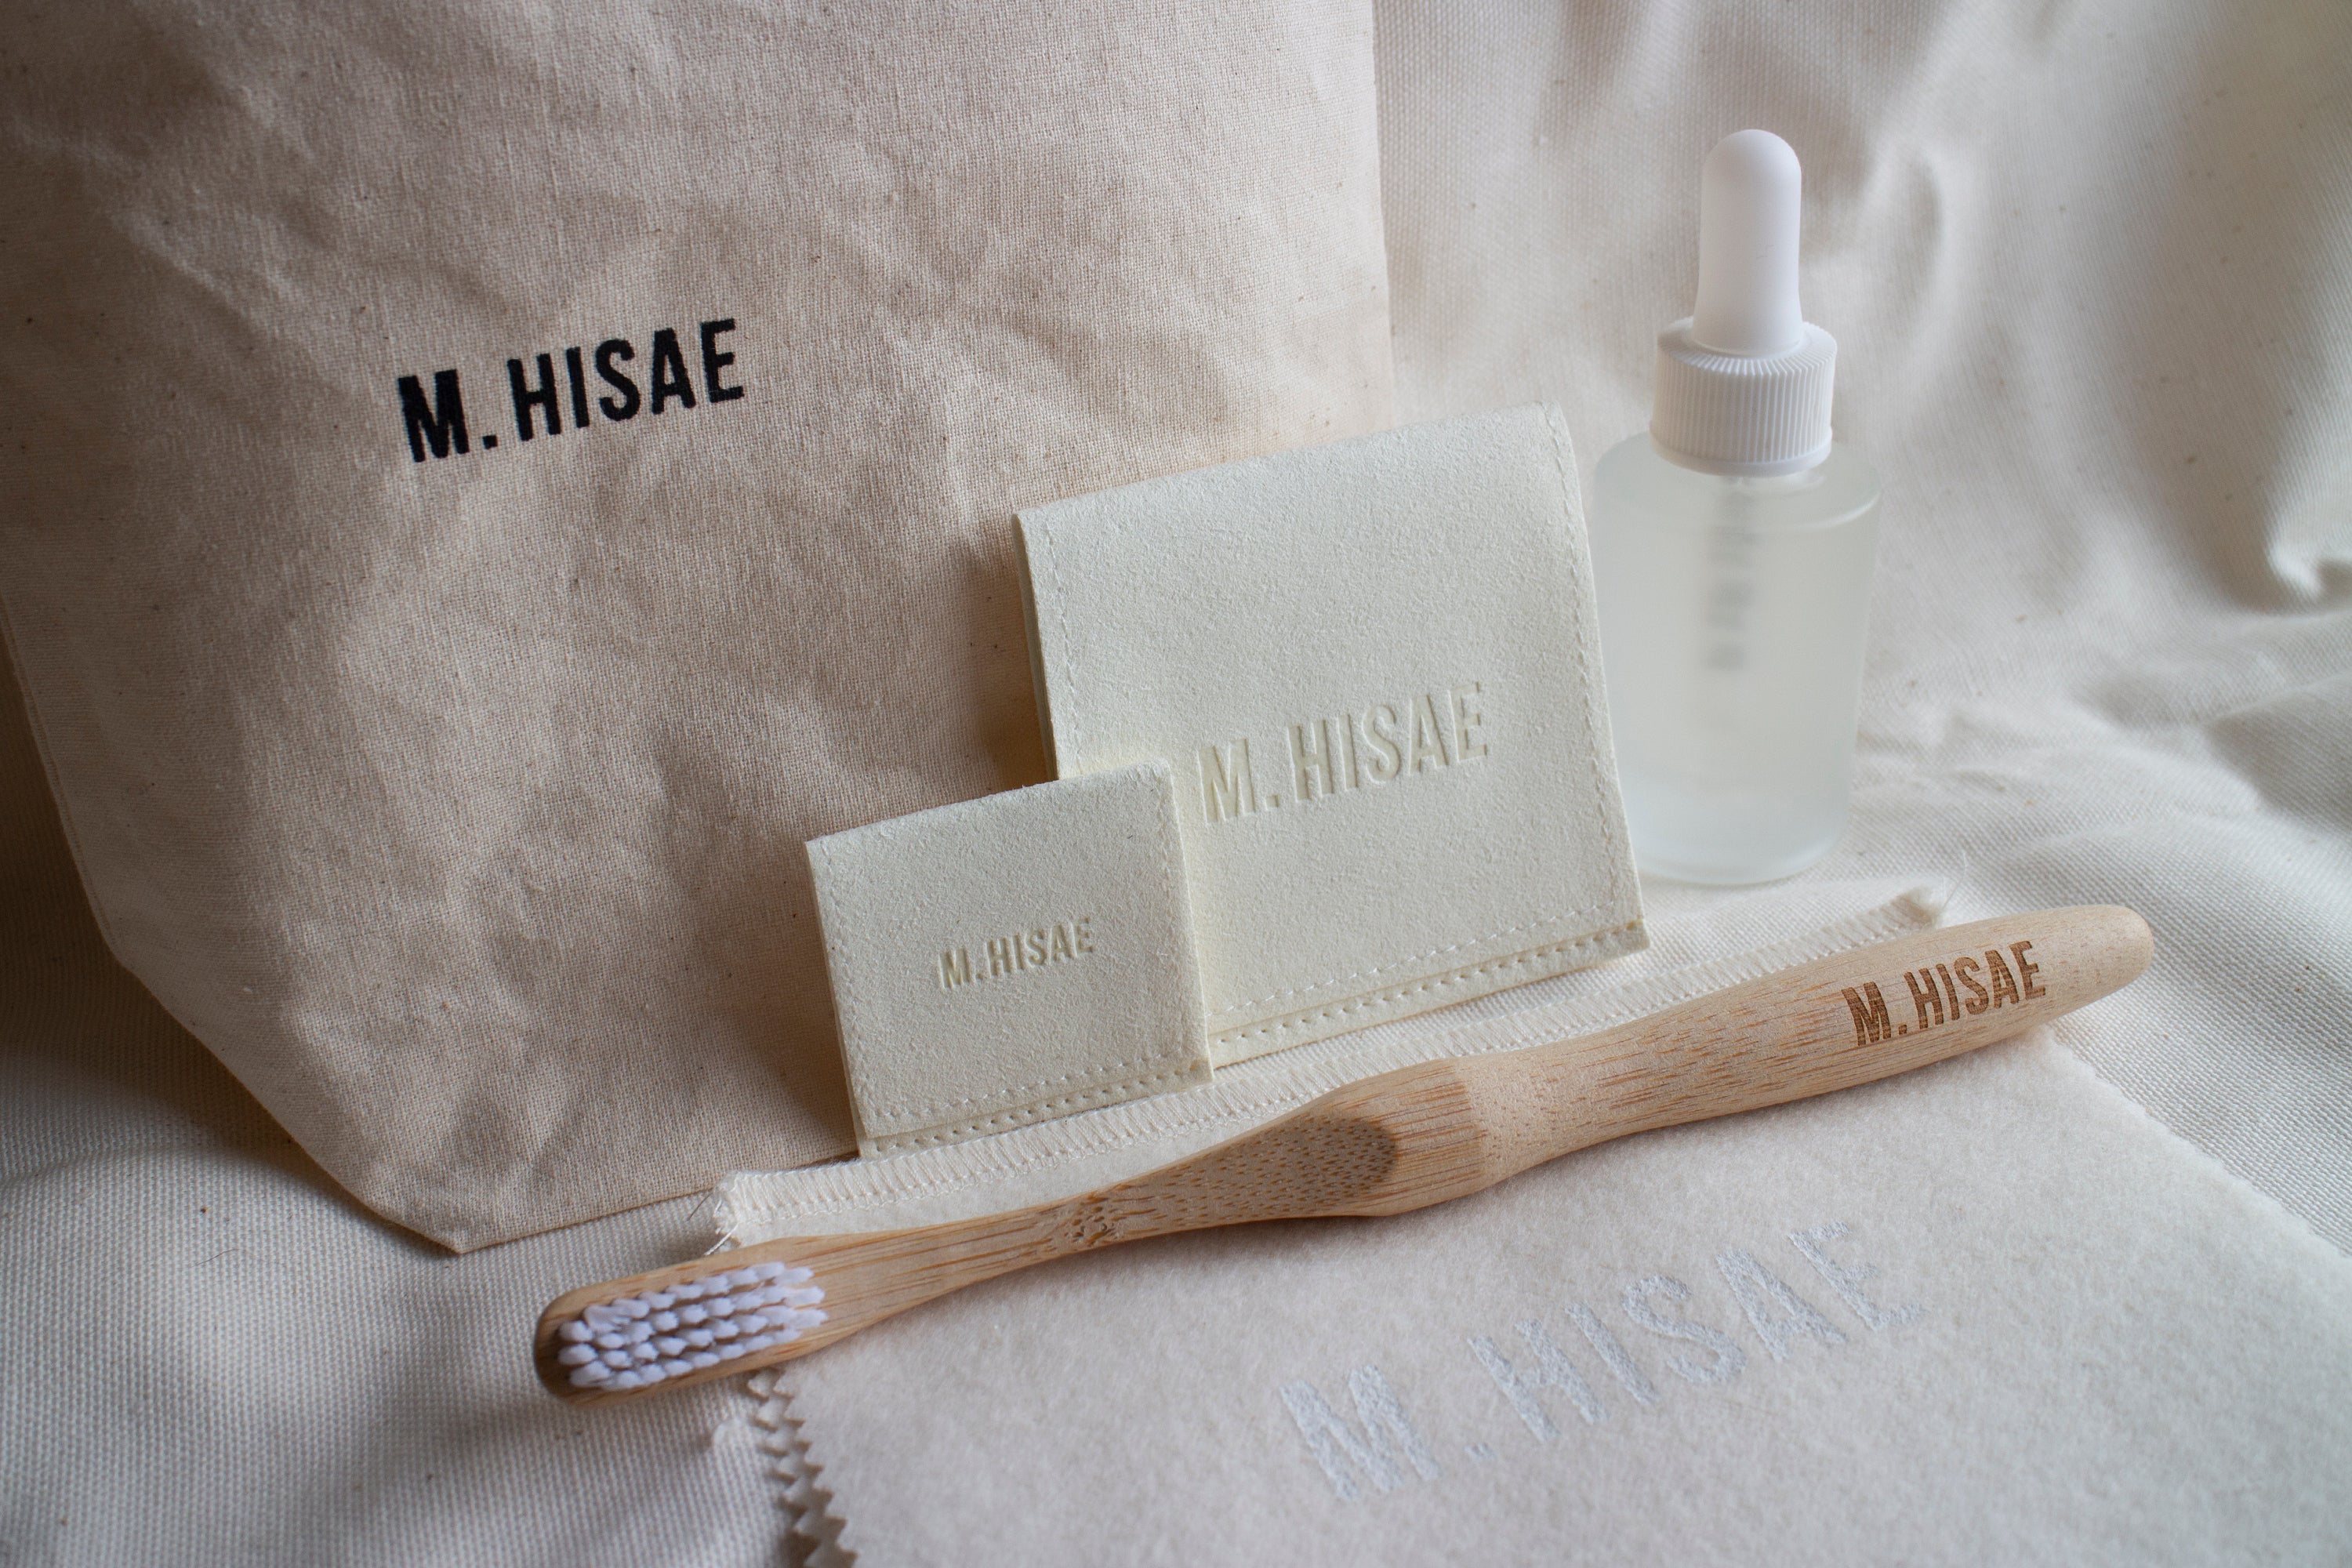 M. Hisae Jewelry Care Kit